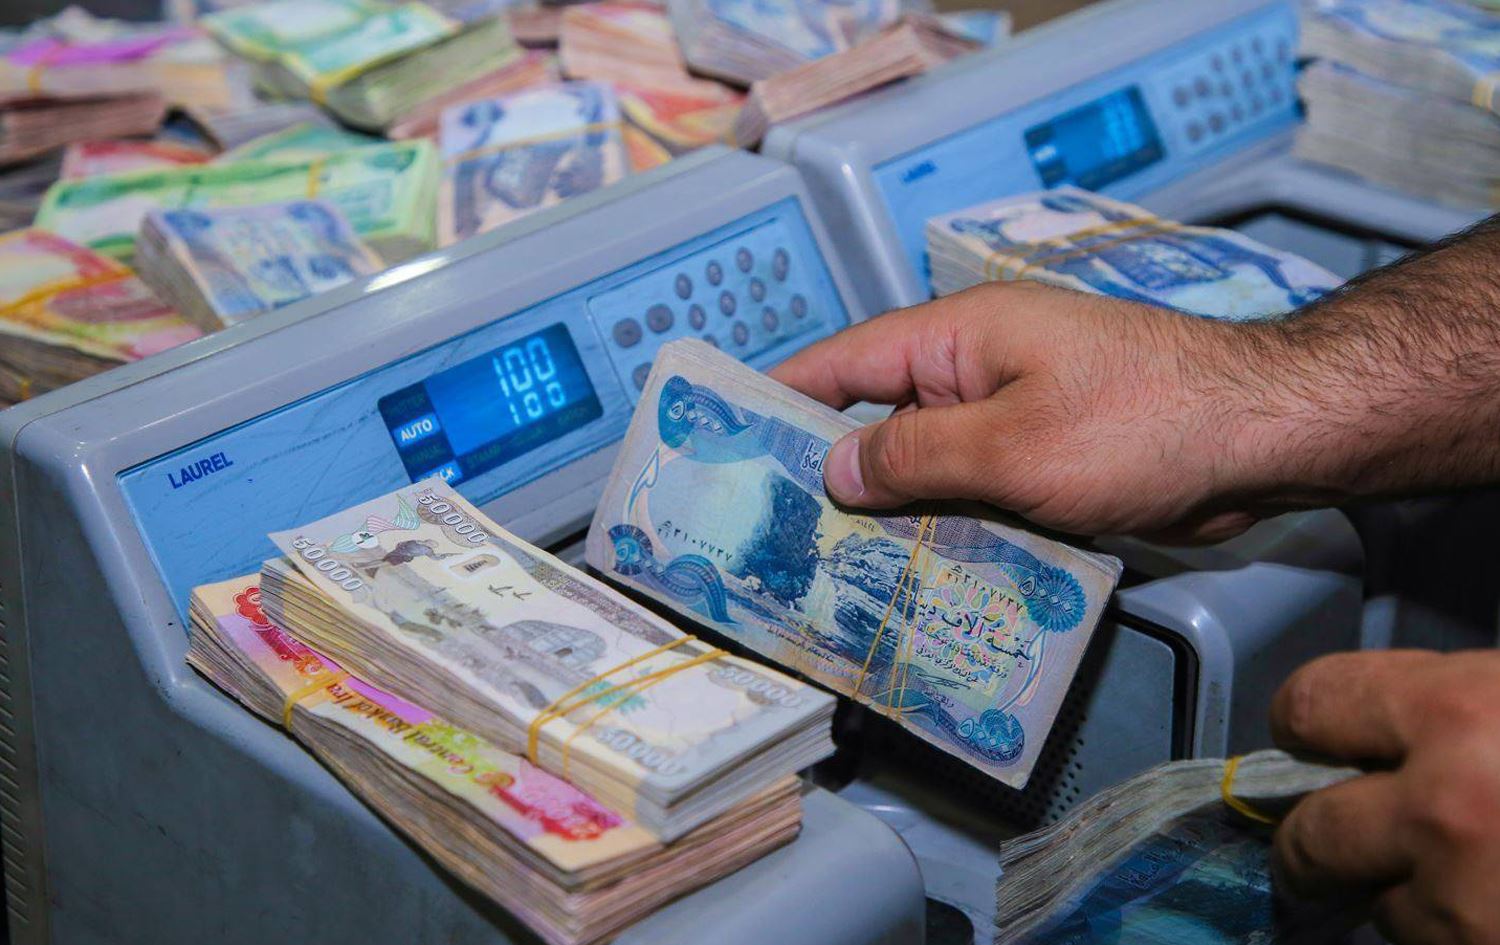 مصرف التجارة العراقي يودع 200 مليار دينار في حساب كوردستان لتمويل الرواتب